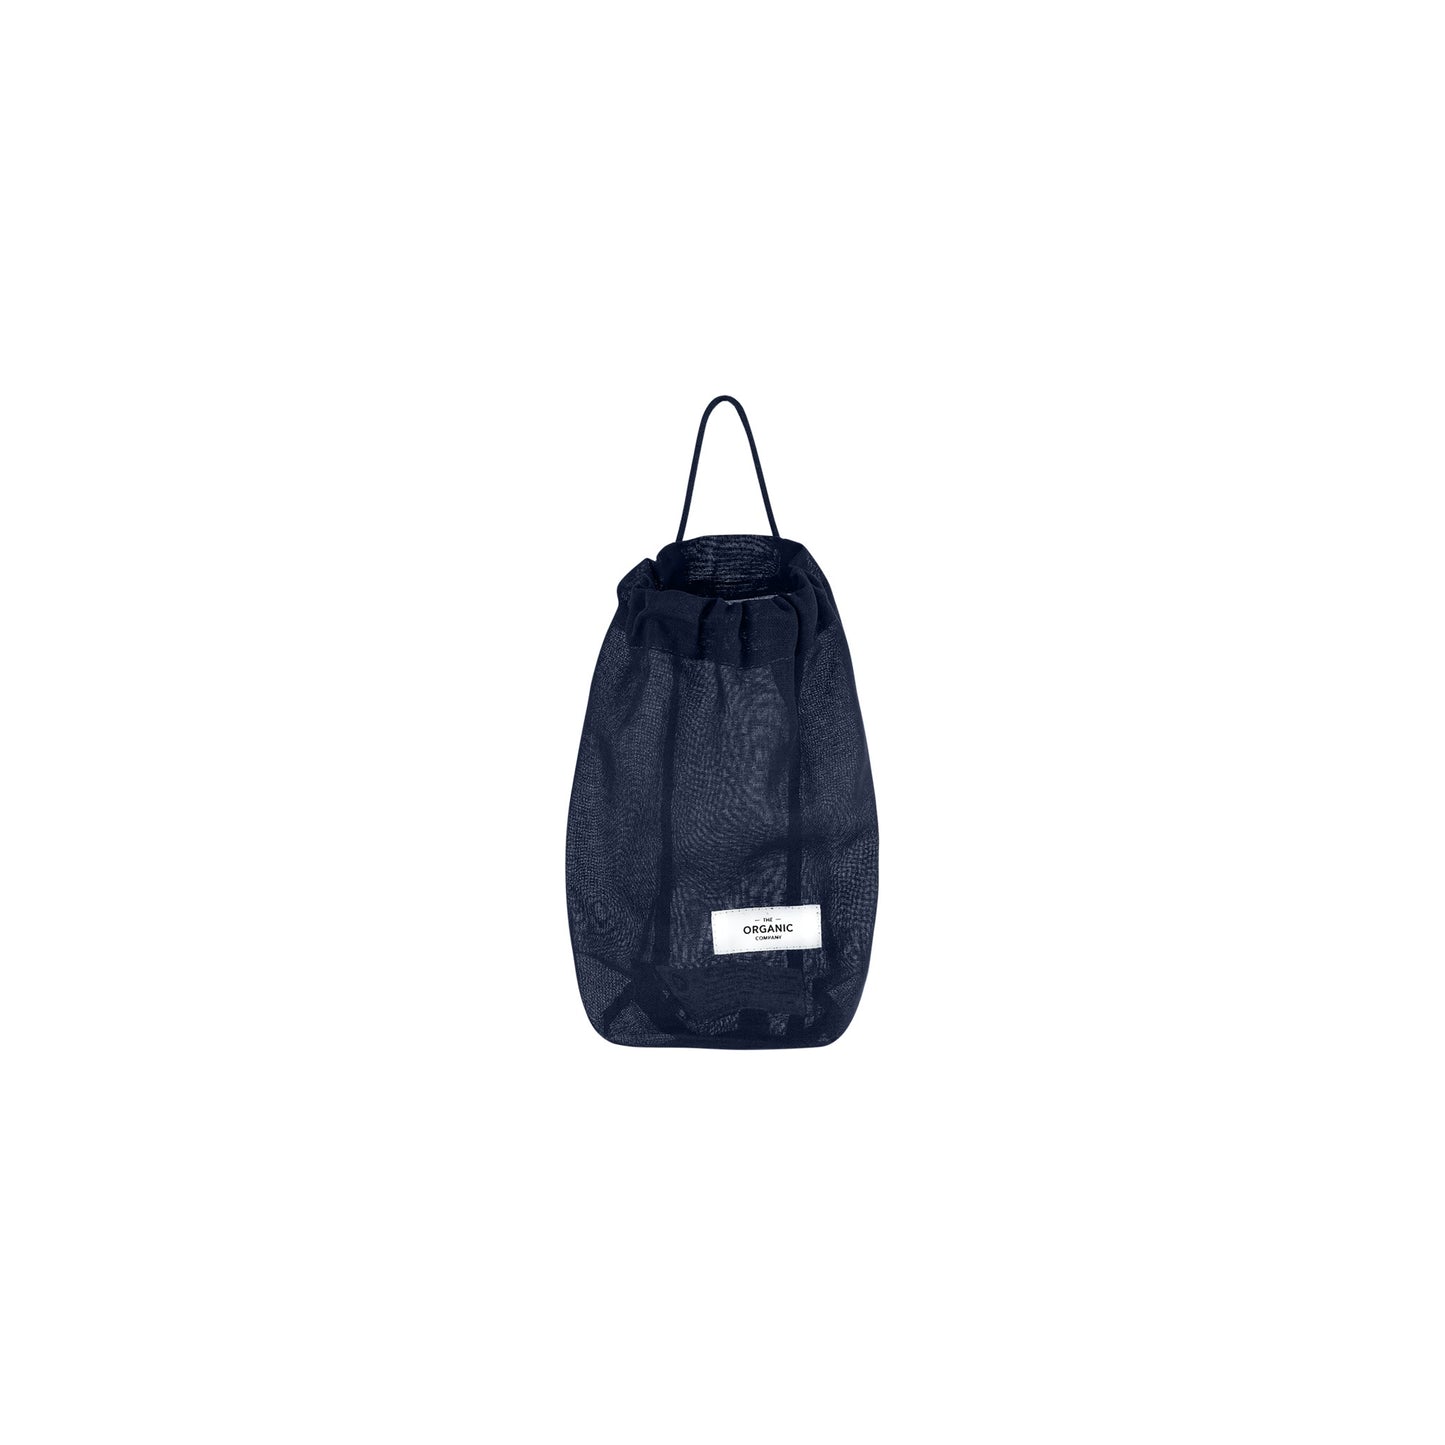 All Purpose Bag Small - Dark Blue